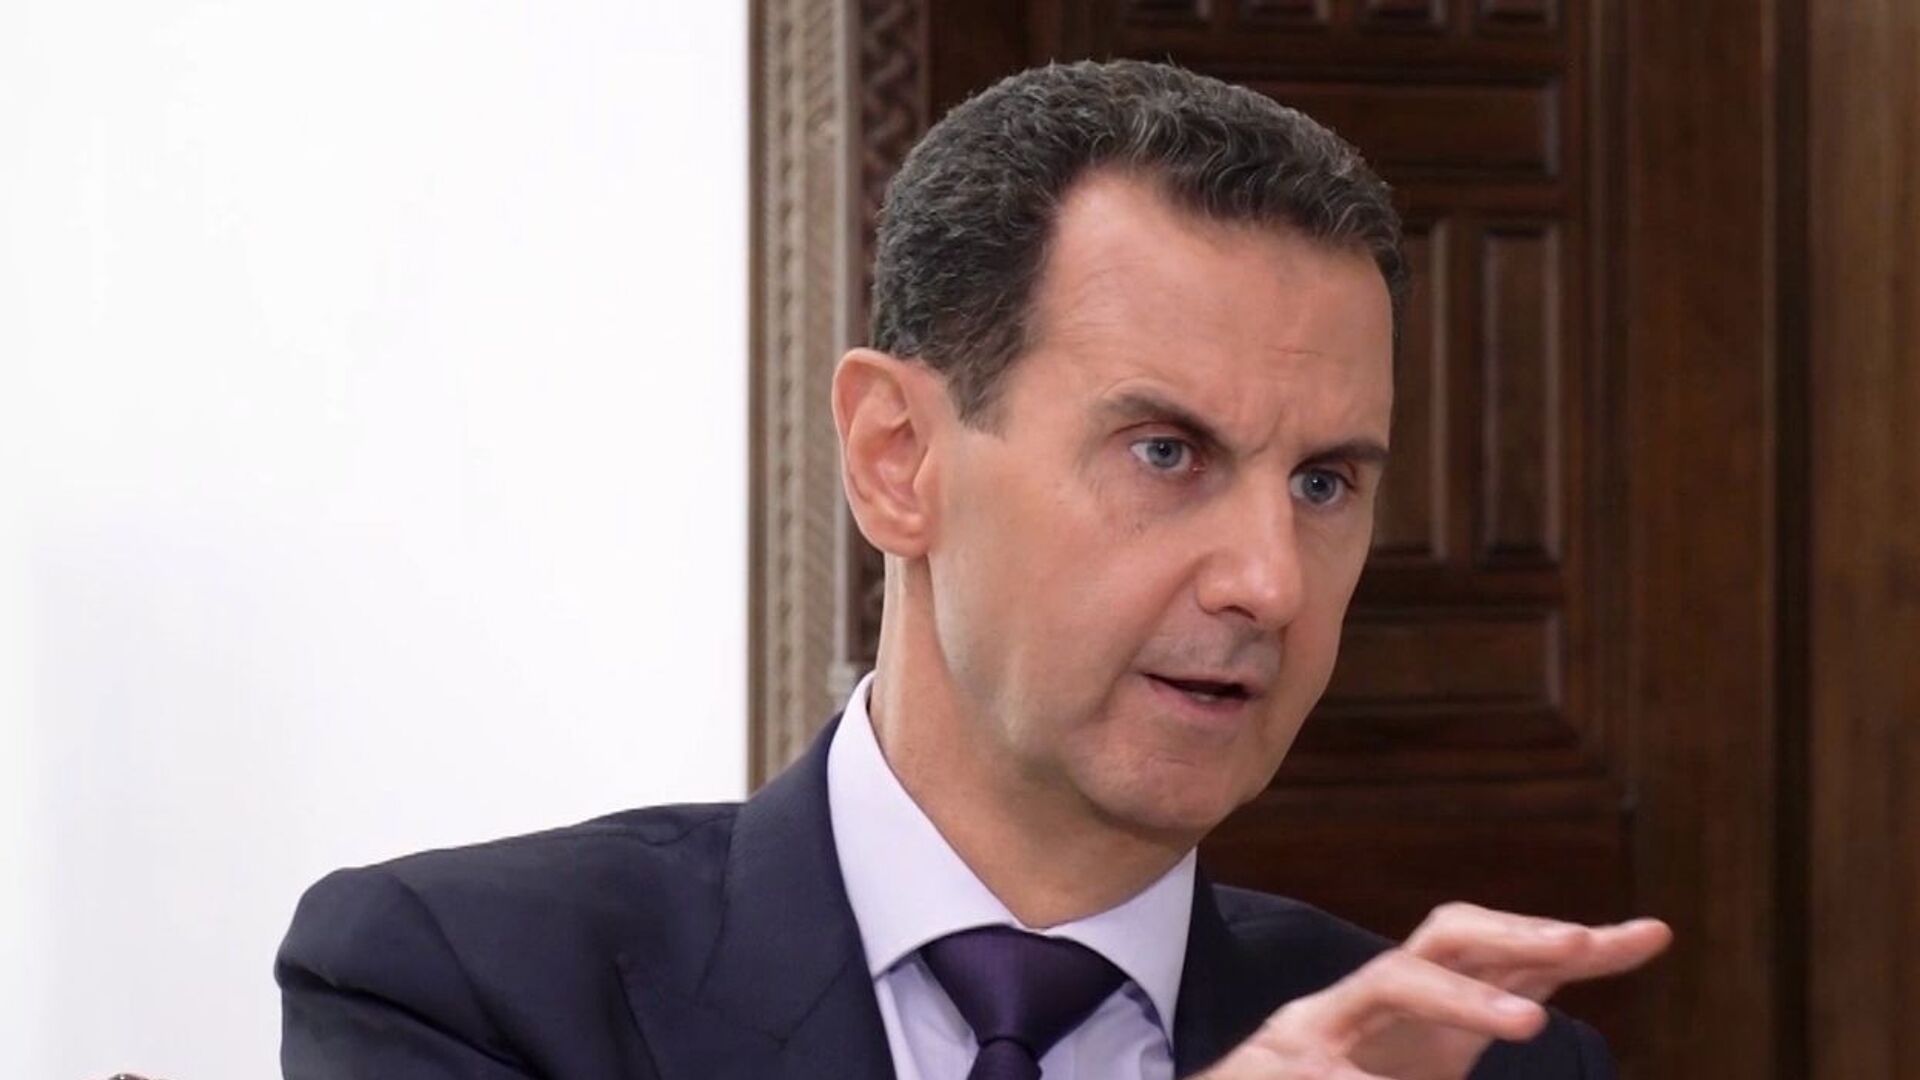 مشروع قانون يمنع الحكومة الاتحادية الأمريكية من الاعتراف بأي حكومة سورية بقيادة الأسد